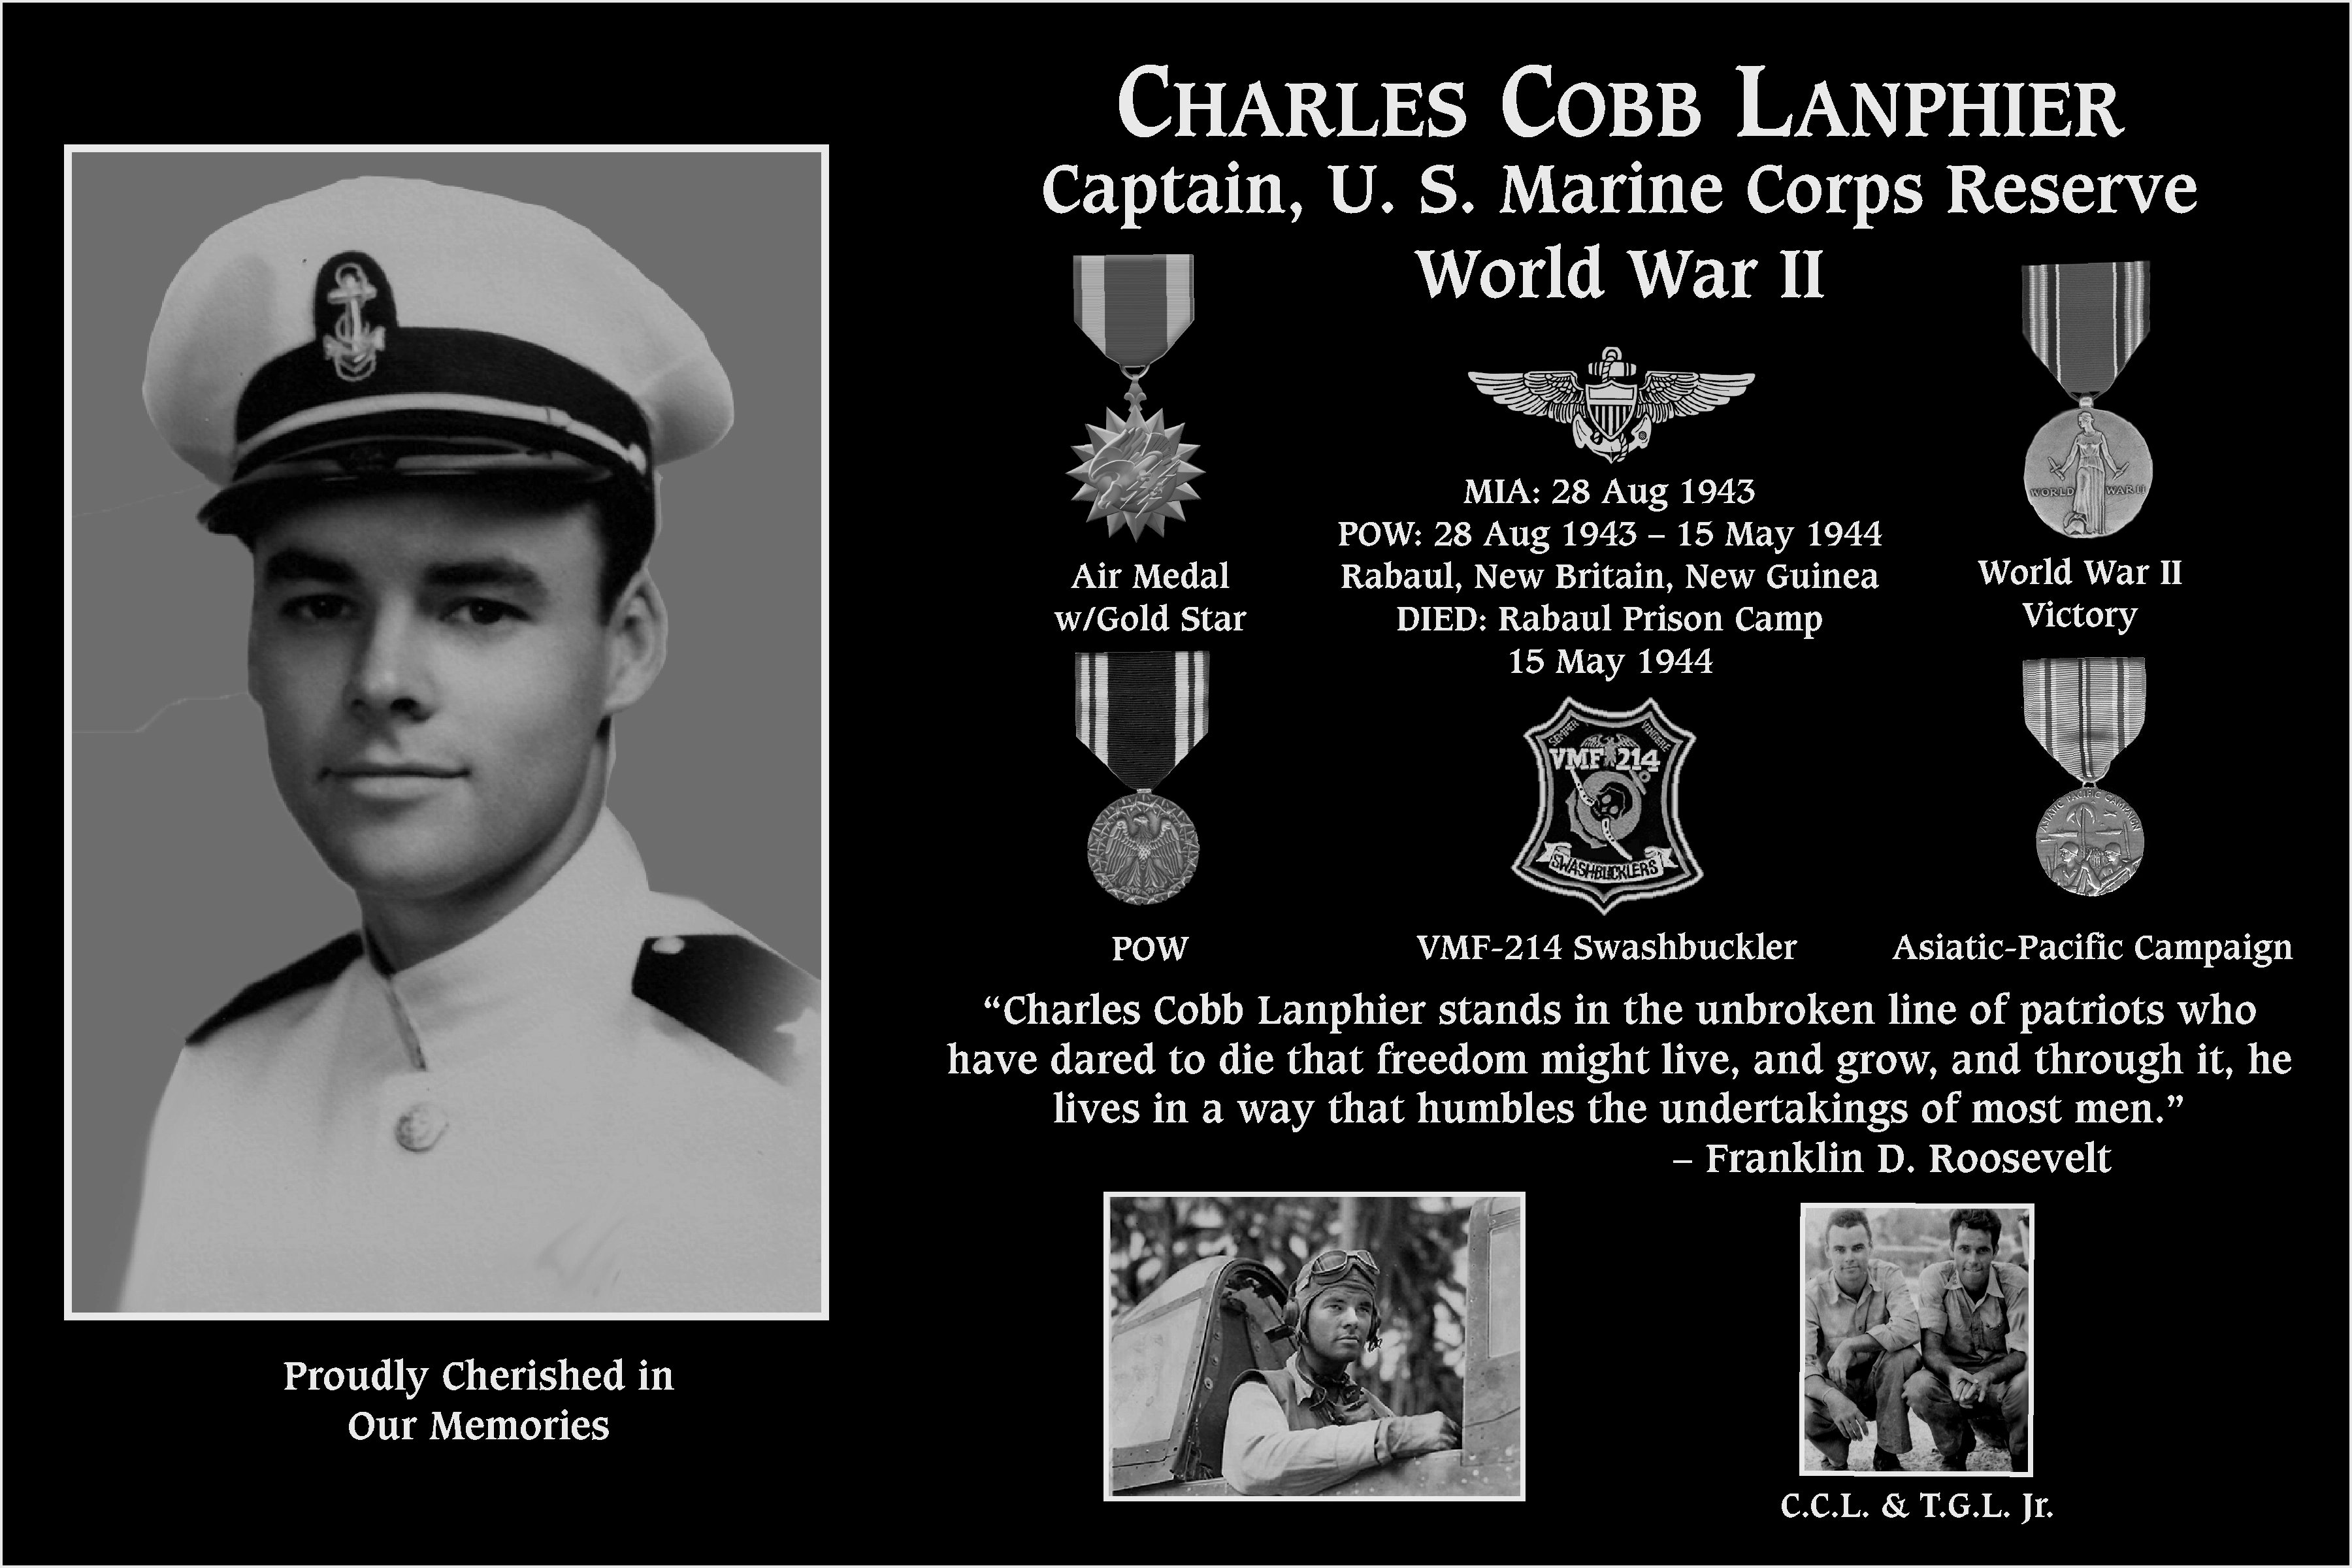 Charles Cobb Lanphier